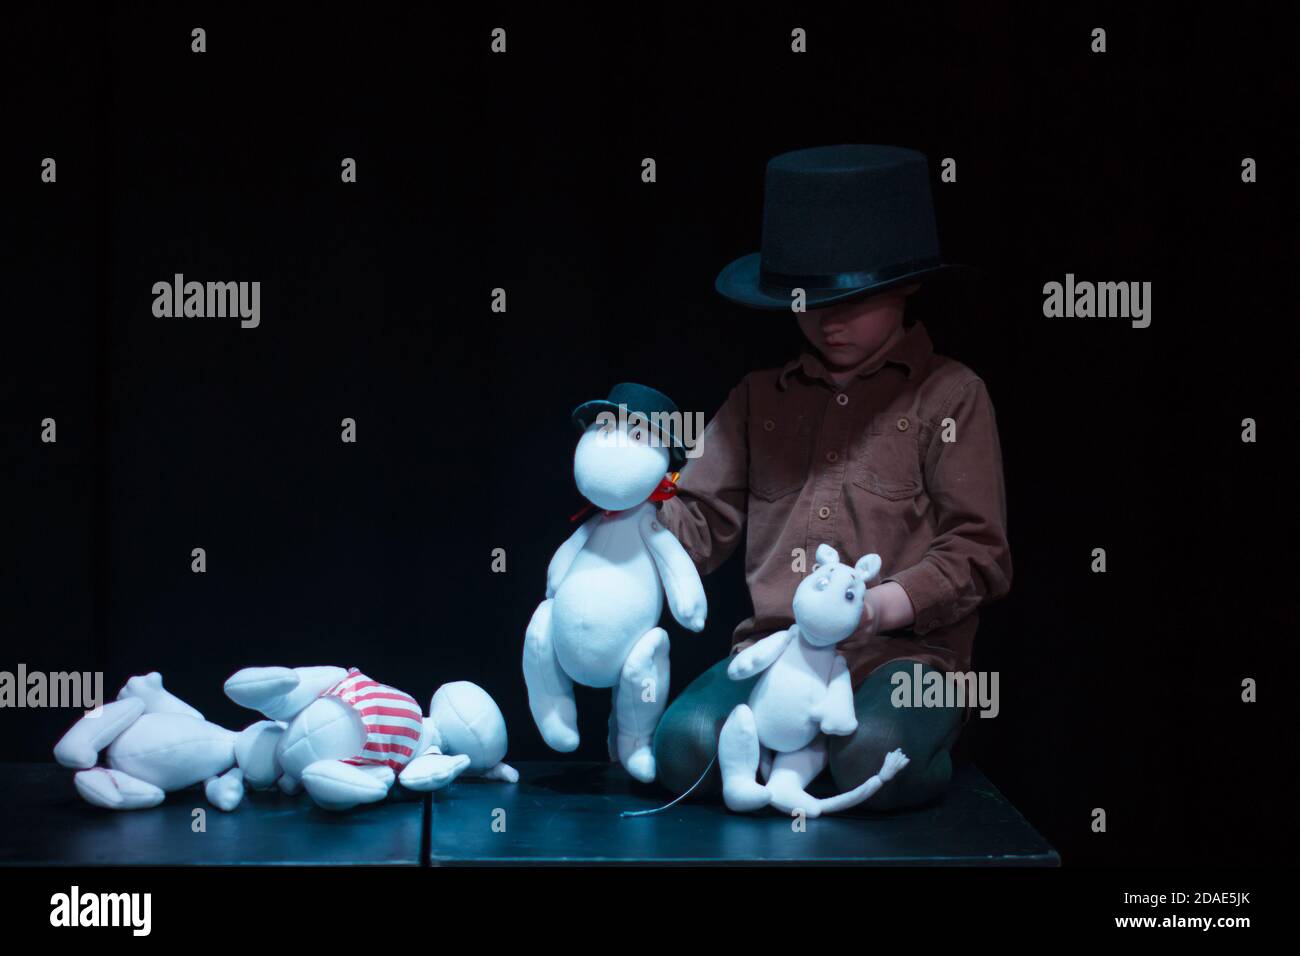 Región de Moscú / Rusia - 01 06 2019: Teatro con Moomins trolls. El niño  juega con las muñecas Moomin Troll. Actor de marionetas en la performance  Fotografía de stock - Alamy